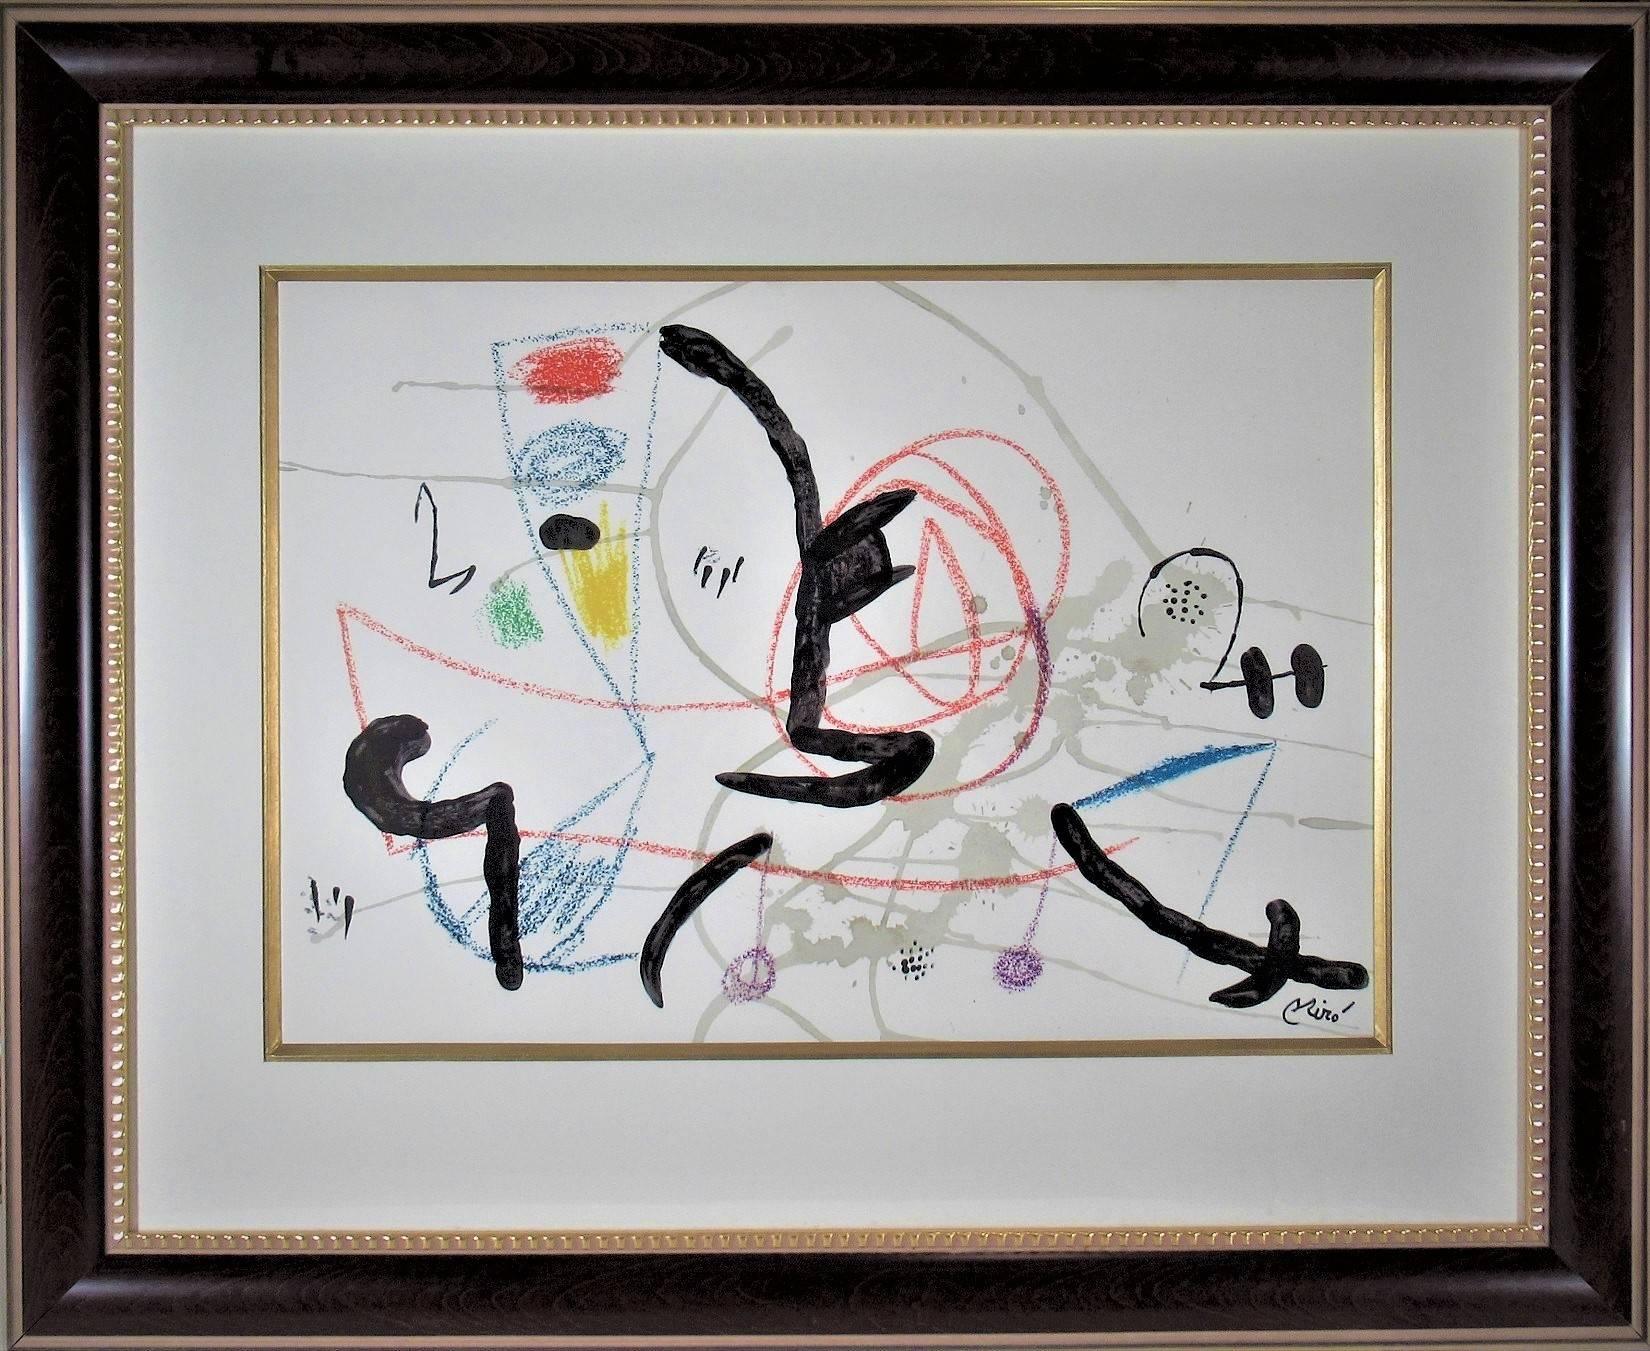 Joan Miró Abstract Print - Maravillas Con Variations Acrosticas en el Jardin de Miro